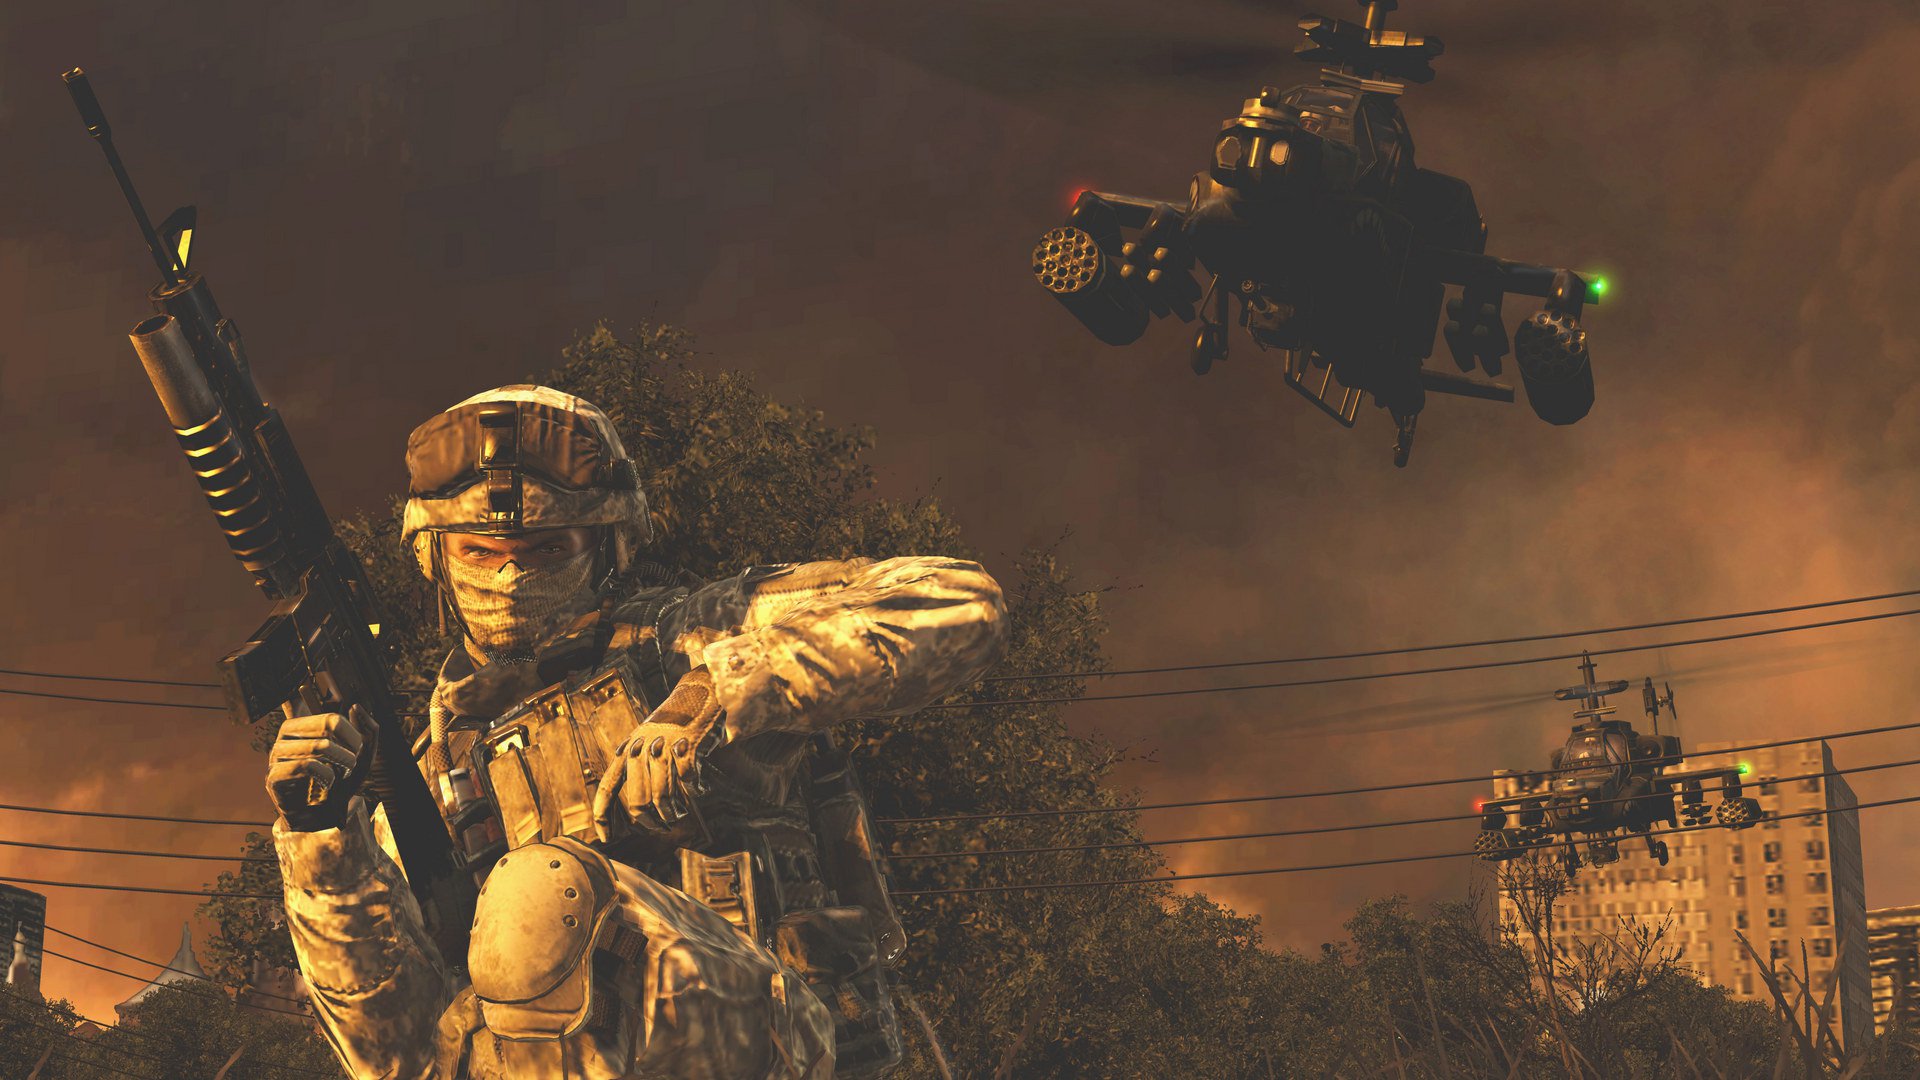 Call of Duty Modern Warfare 2 1